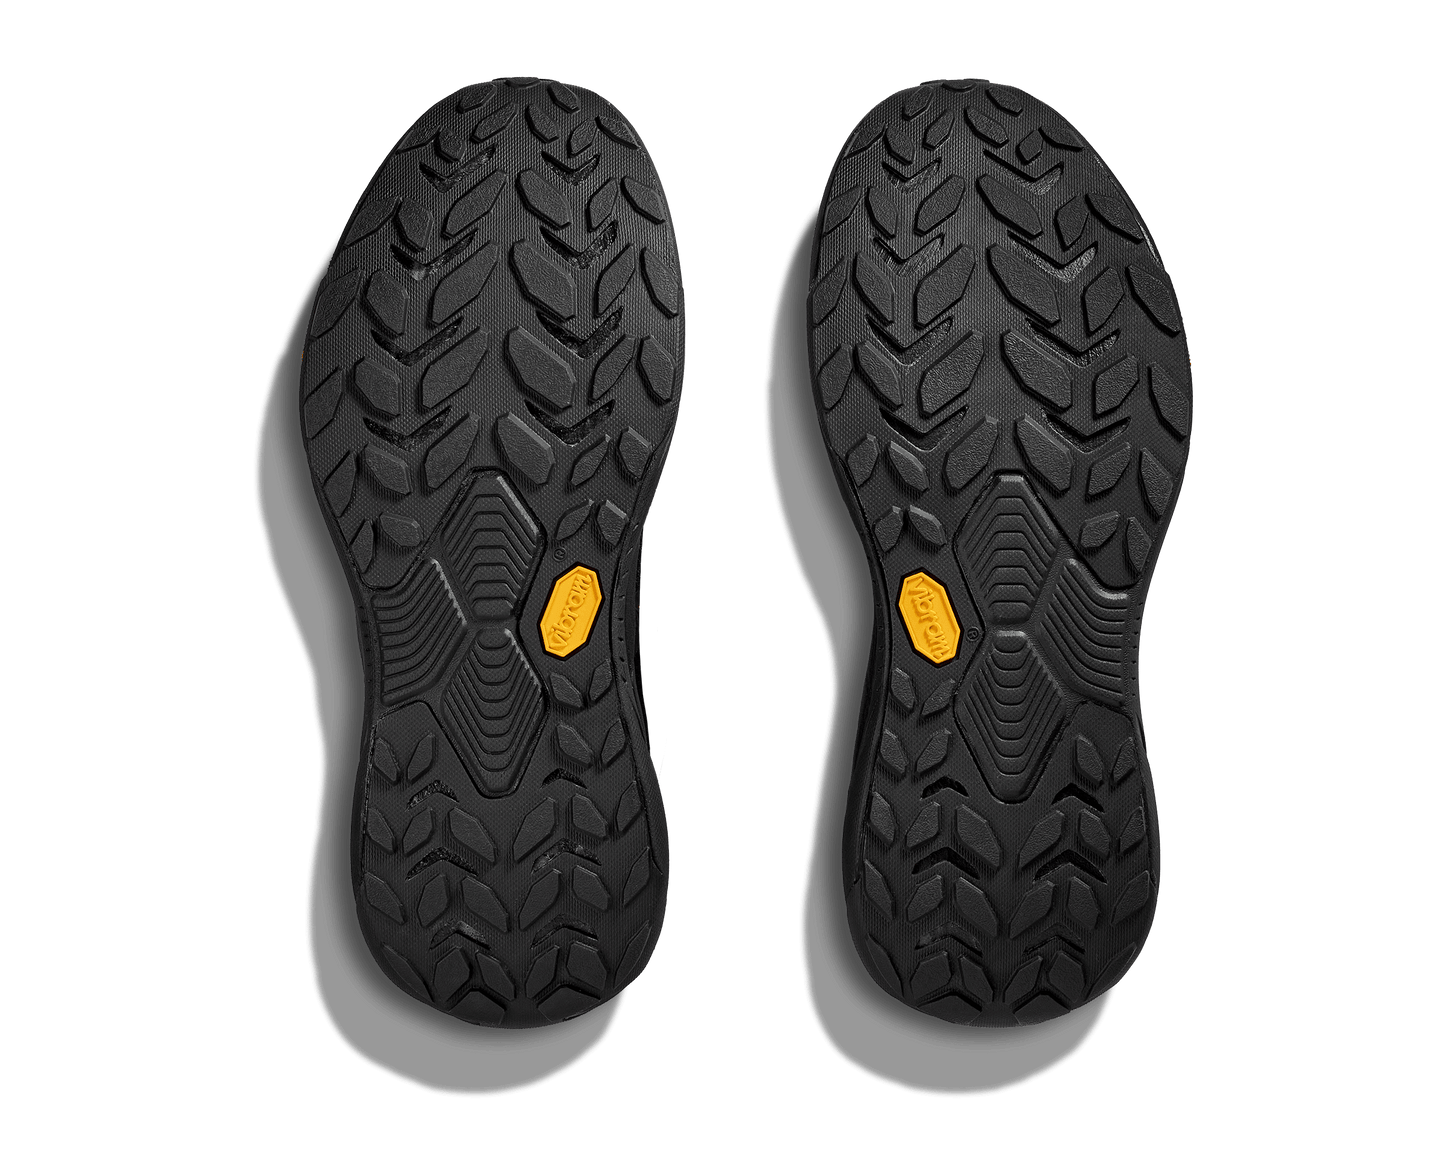 Hoka Transport i herrmodell. Stilren svart sko som är perfekt till vardags med mycket olika aktiviteter. Hos Hoka specialisterna i Sverige.